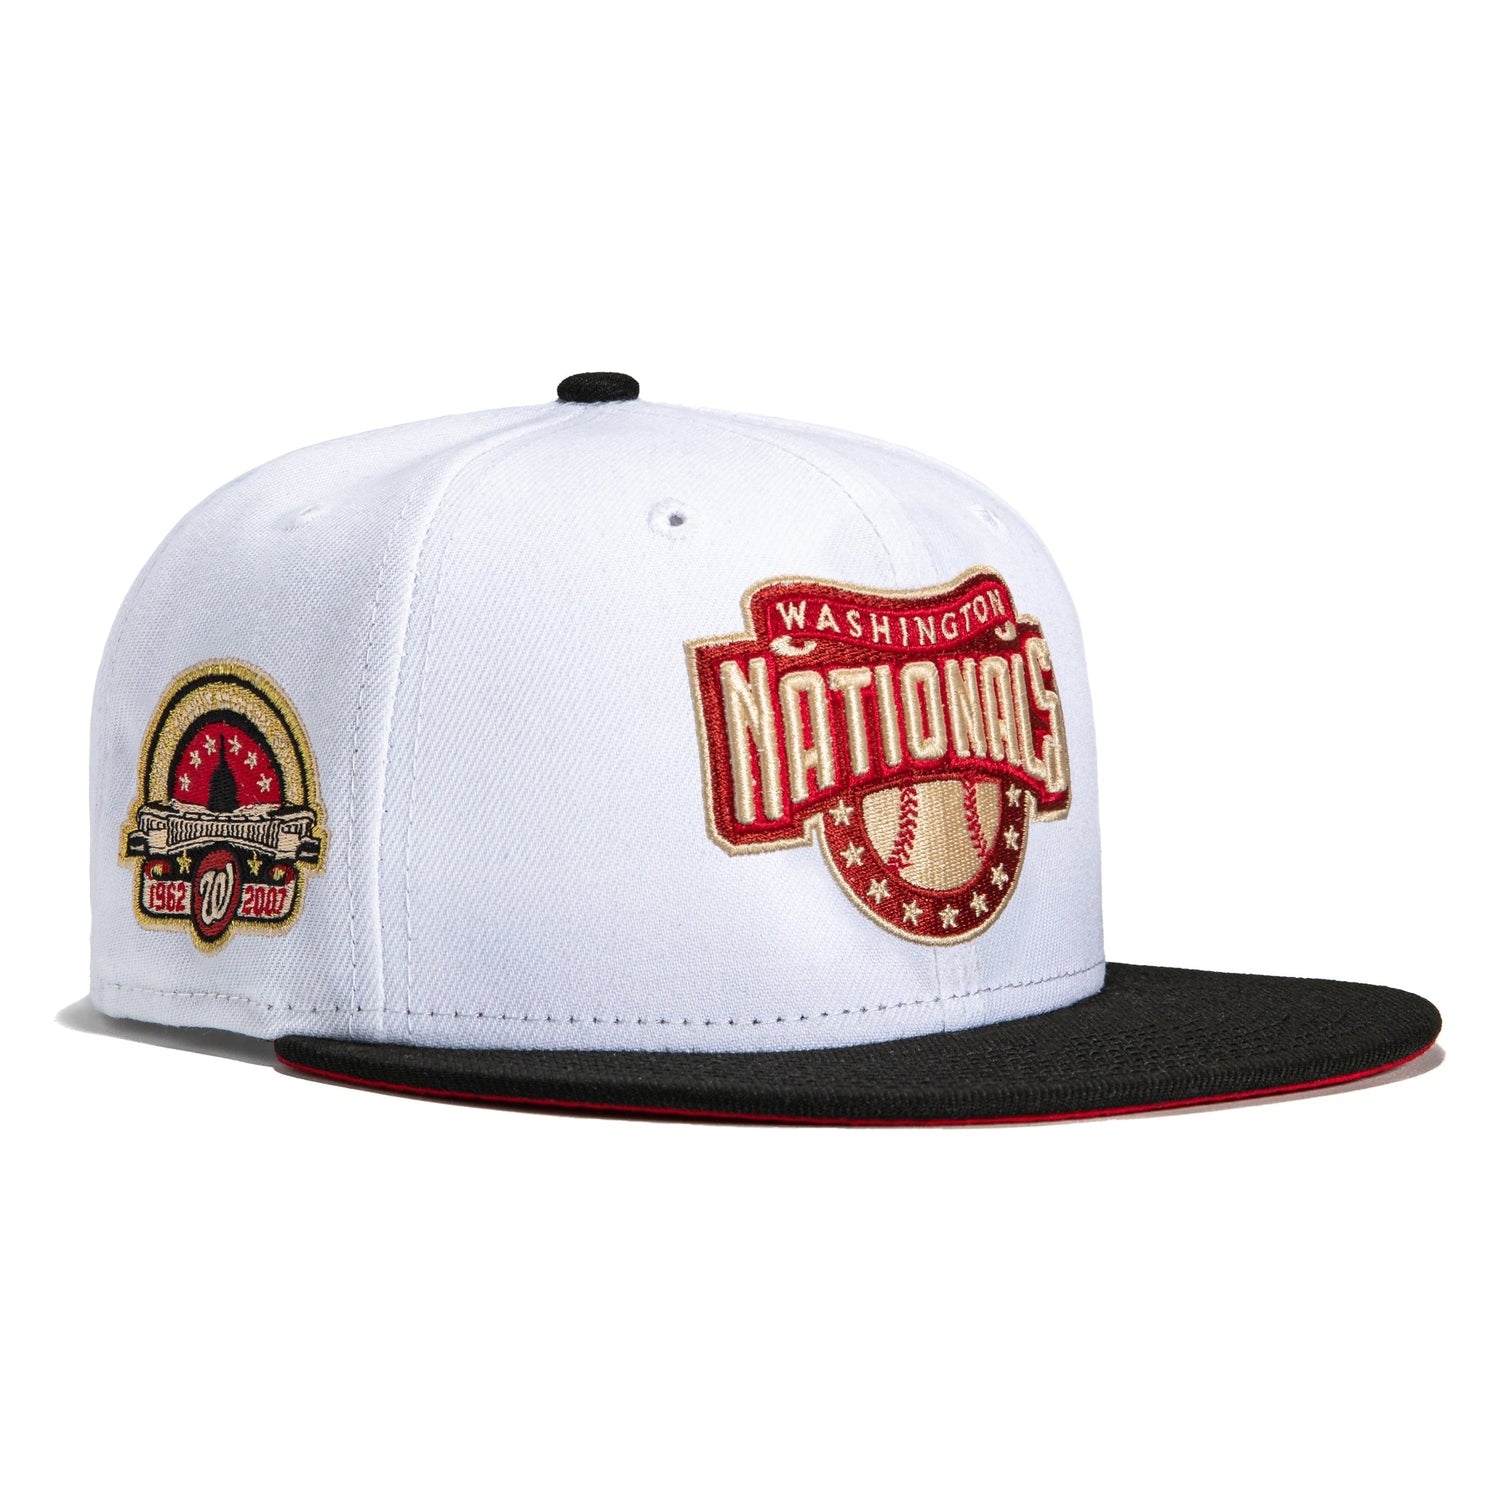 Washington Nationals Hat 7-1/8